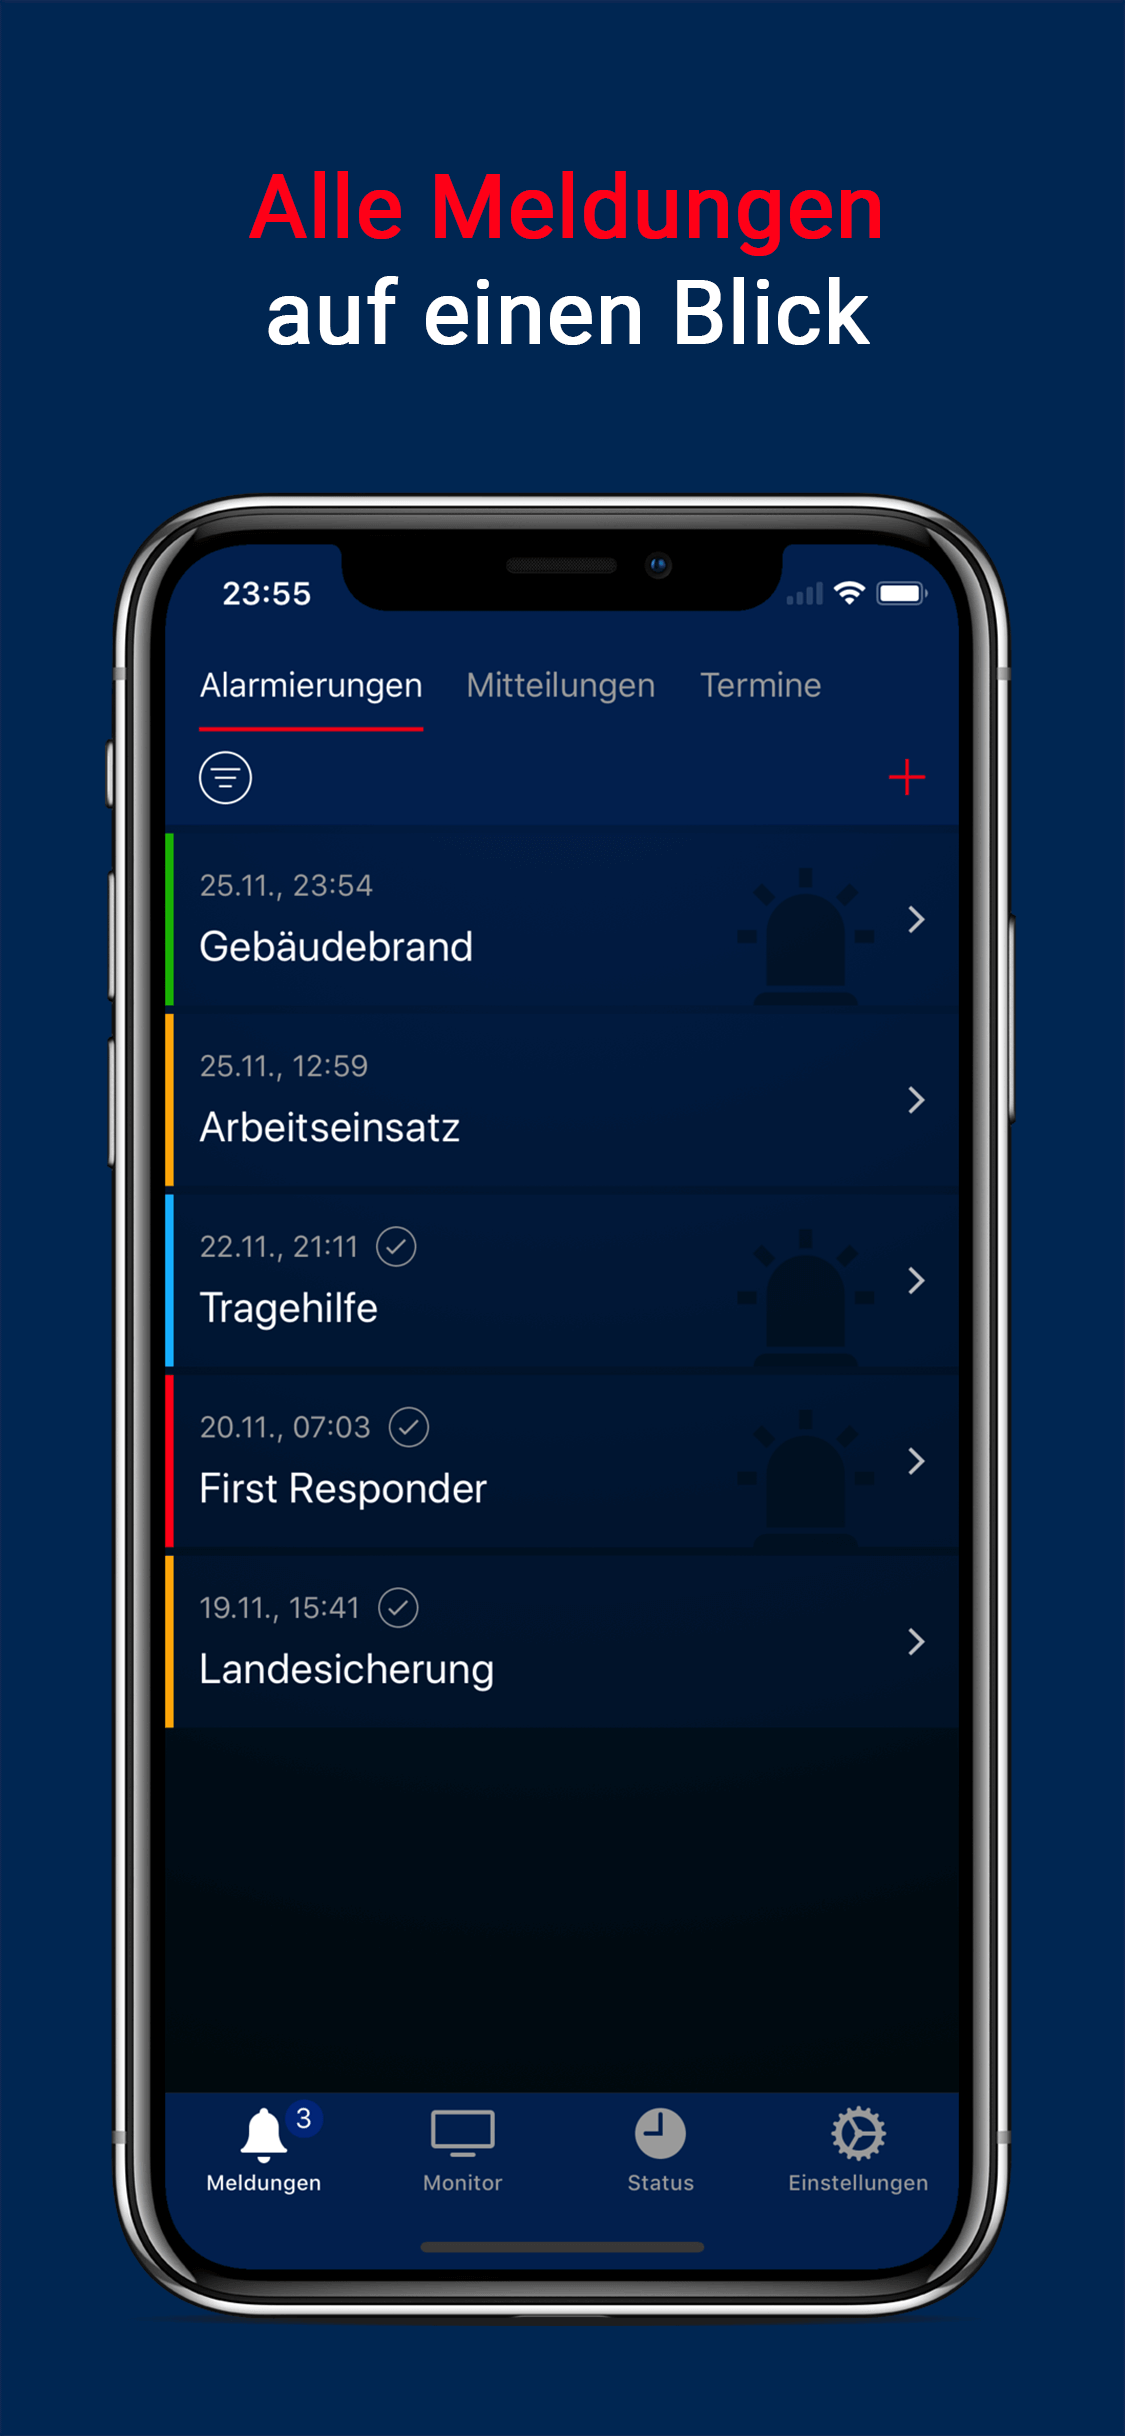 Alarm-App für Einsatzkräfte und Mitarbeiter zur Handy- und Zusatzalarmierung mit Rückmeldefunktion zur Eingabe der Personalverfügbarkeit